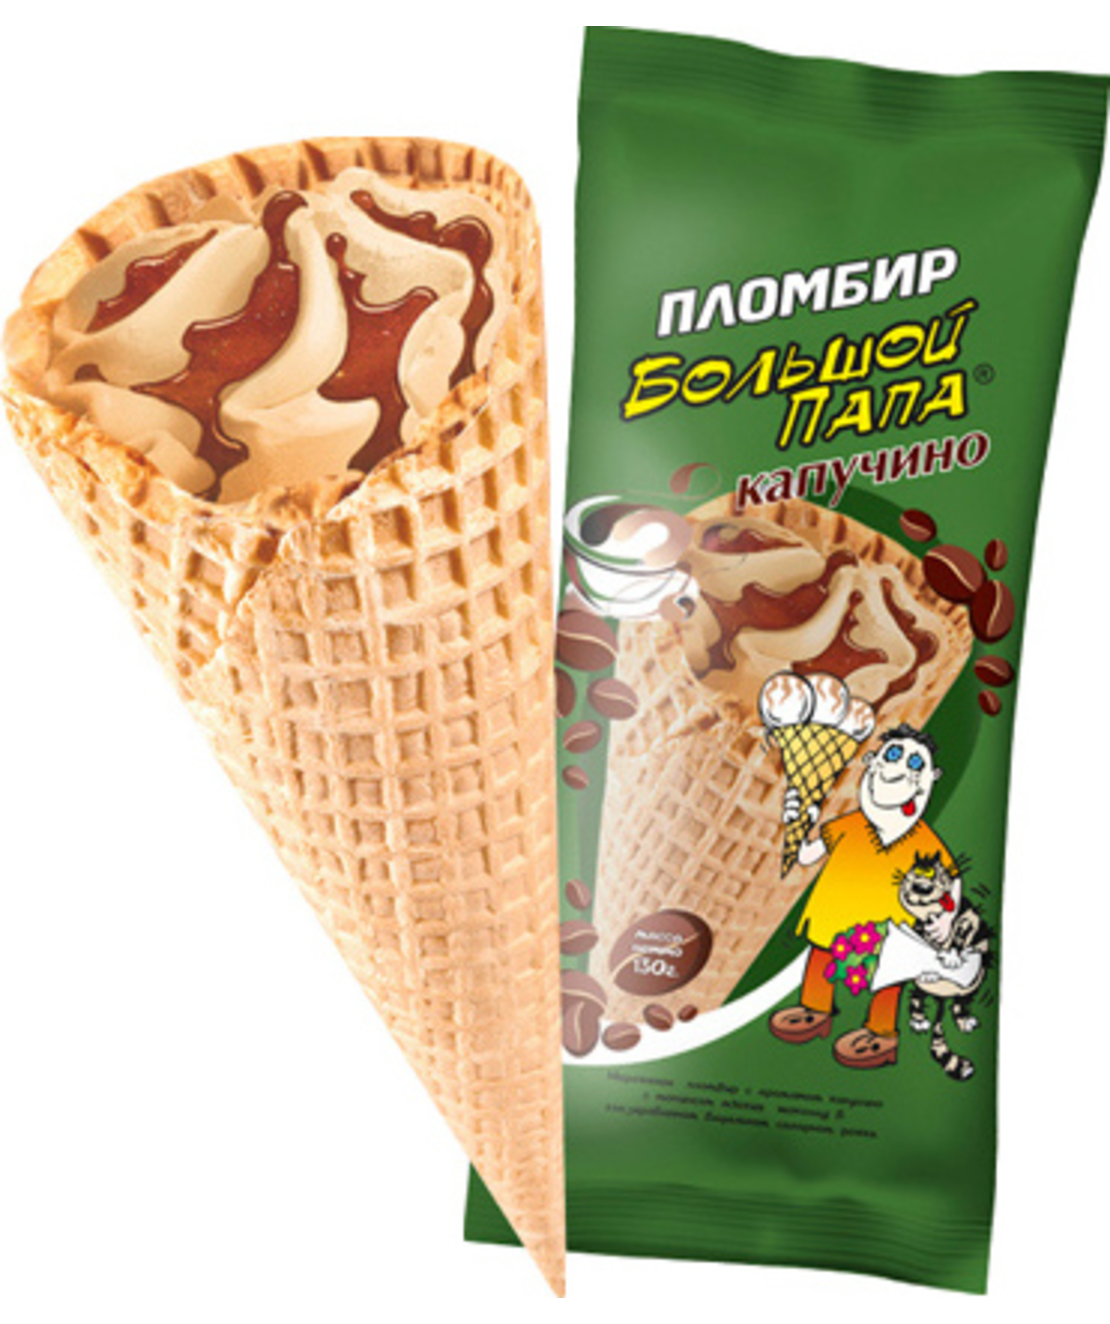 Мороженое большой папа капучино